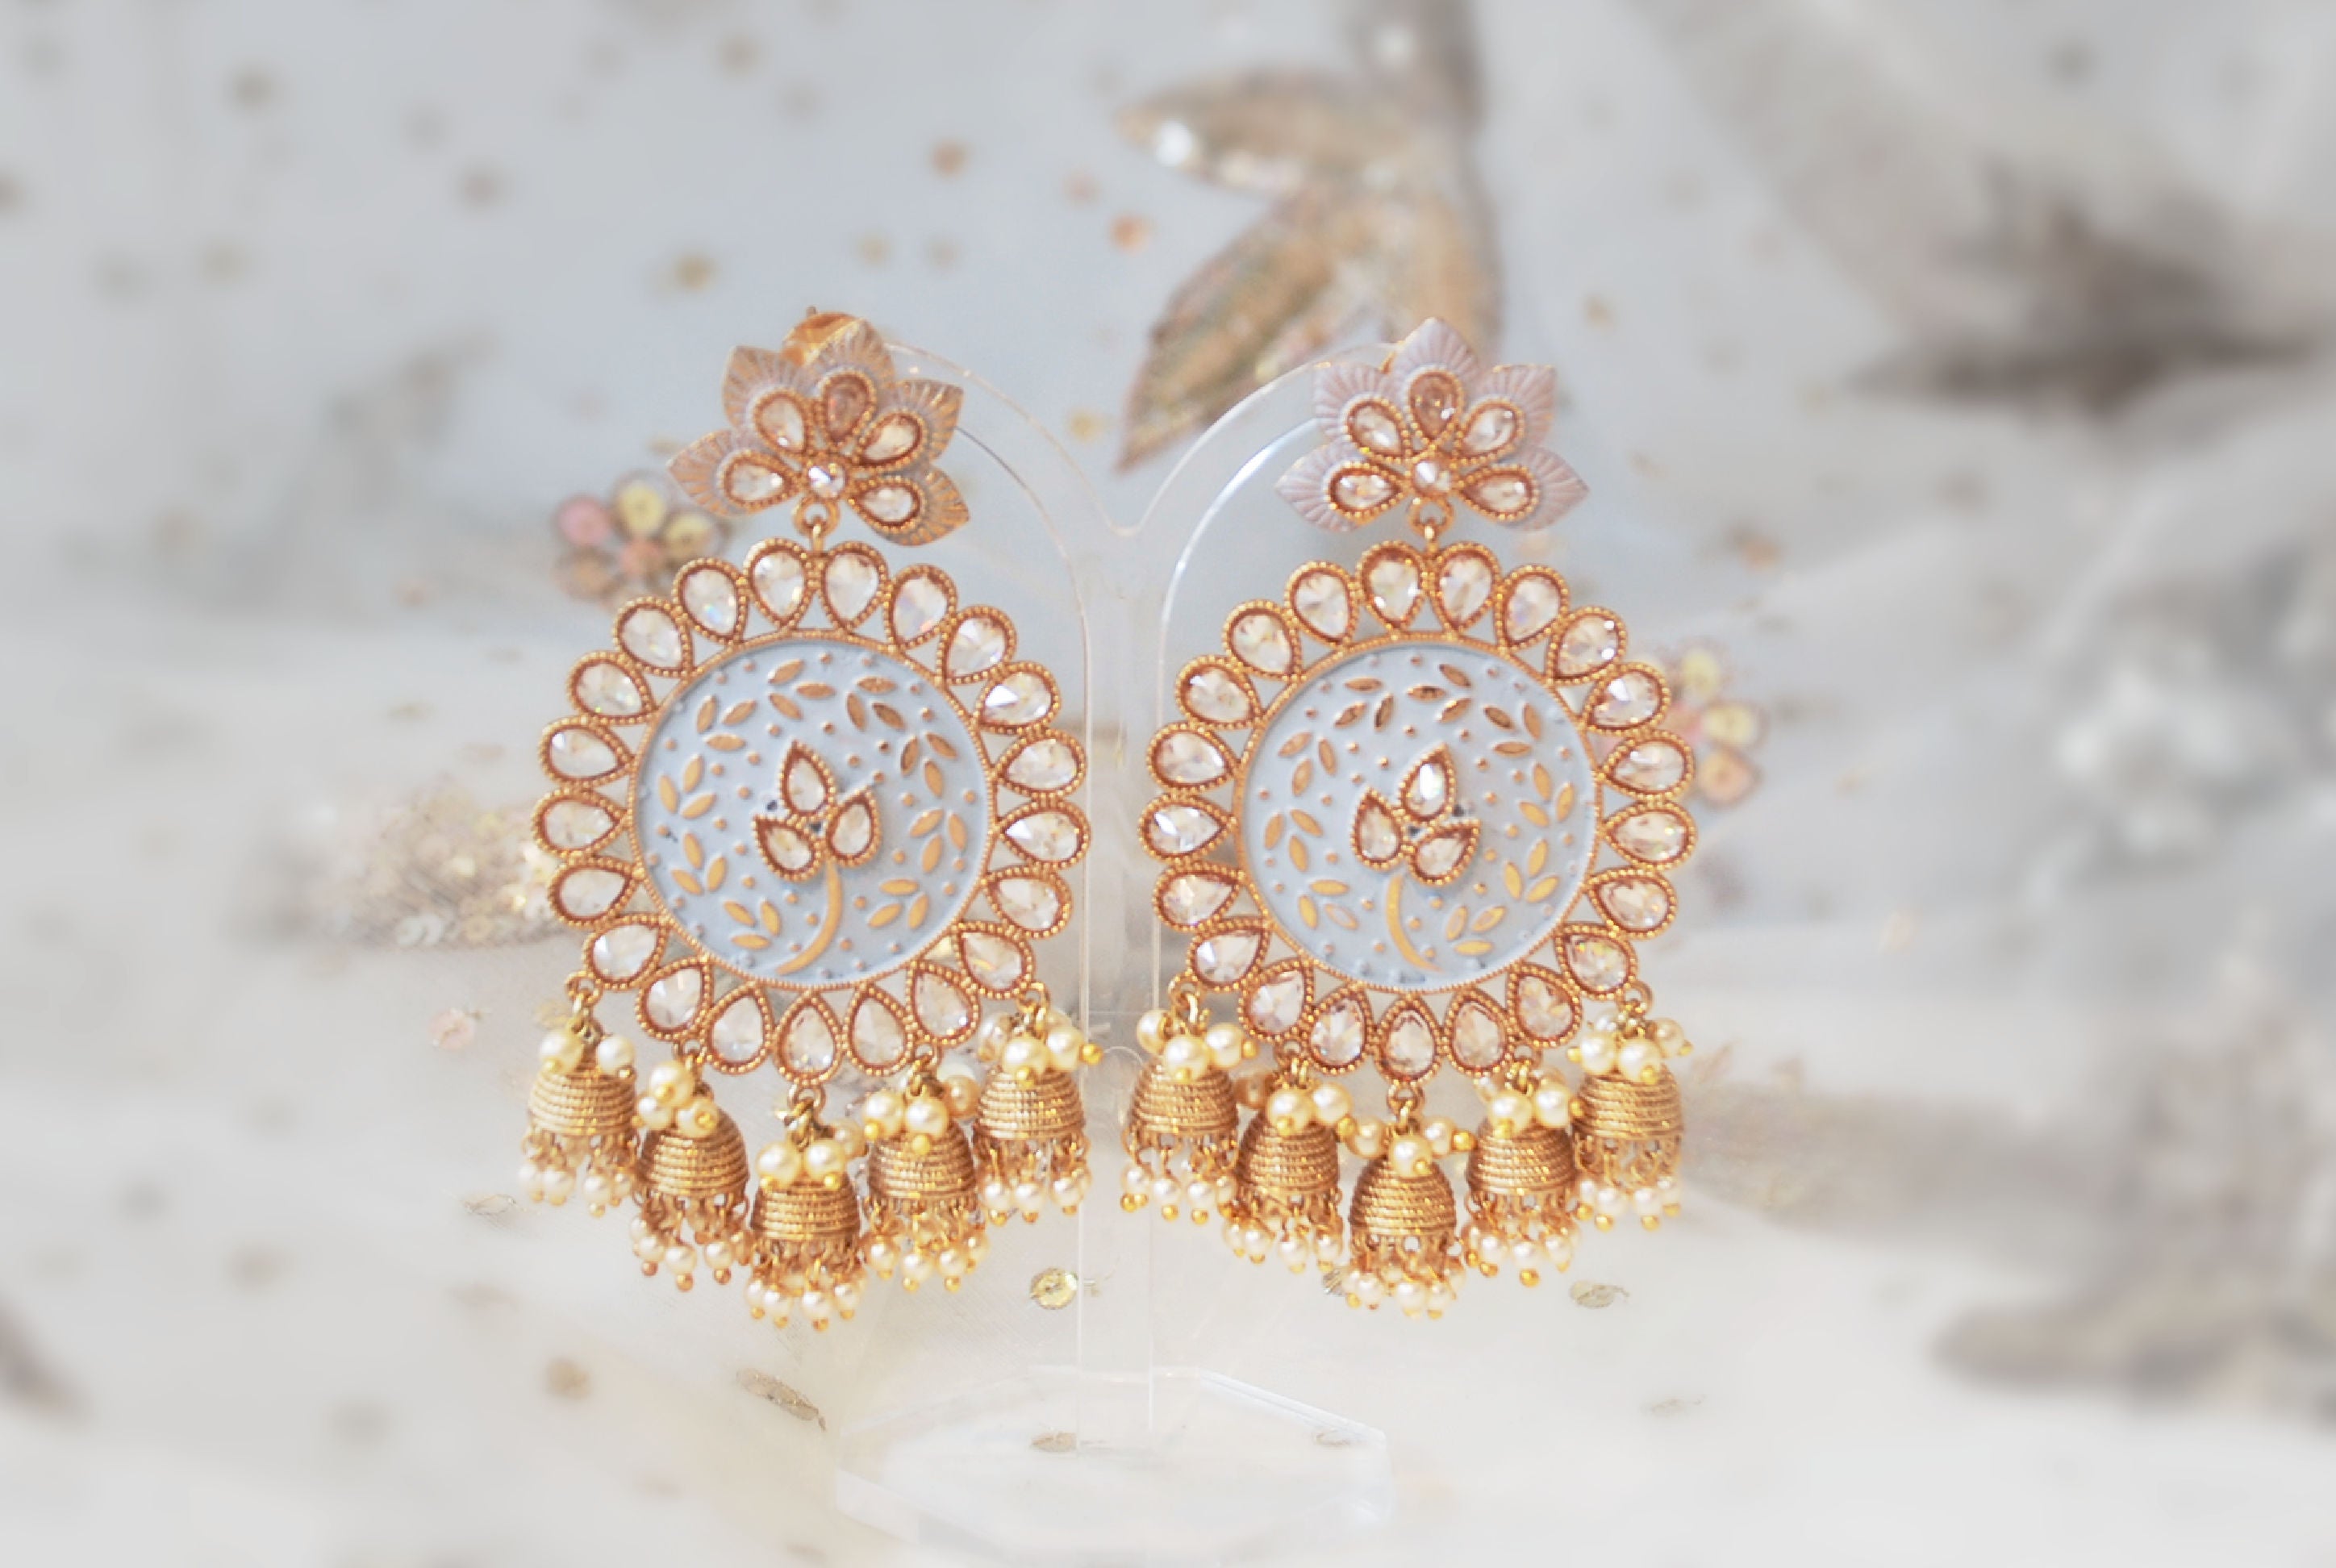 How to style earrings with chikankari kurti || Kurti earrings ideas ||  jewellery for kurtis - YouTube